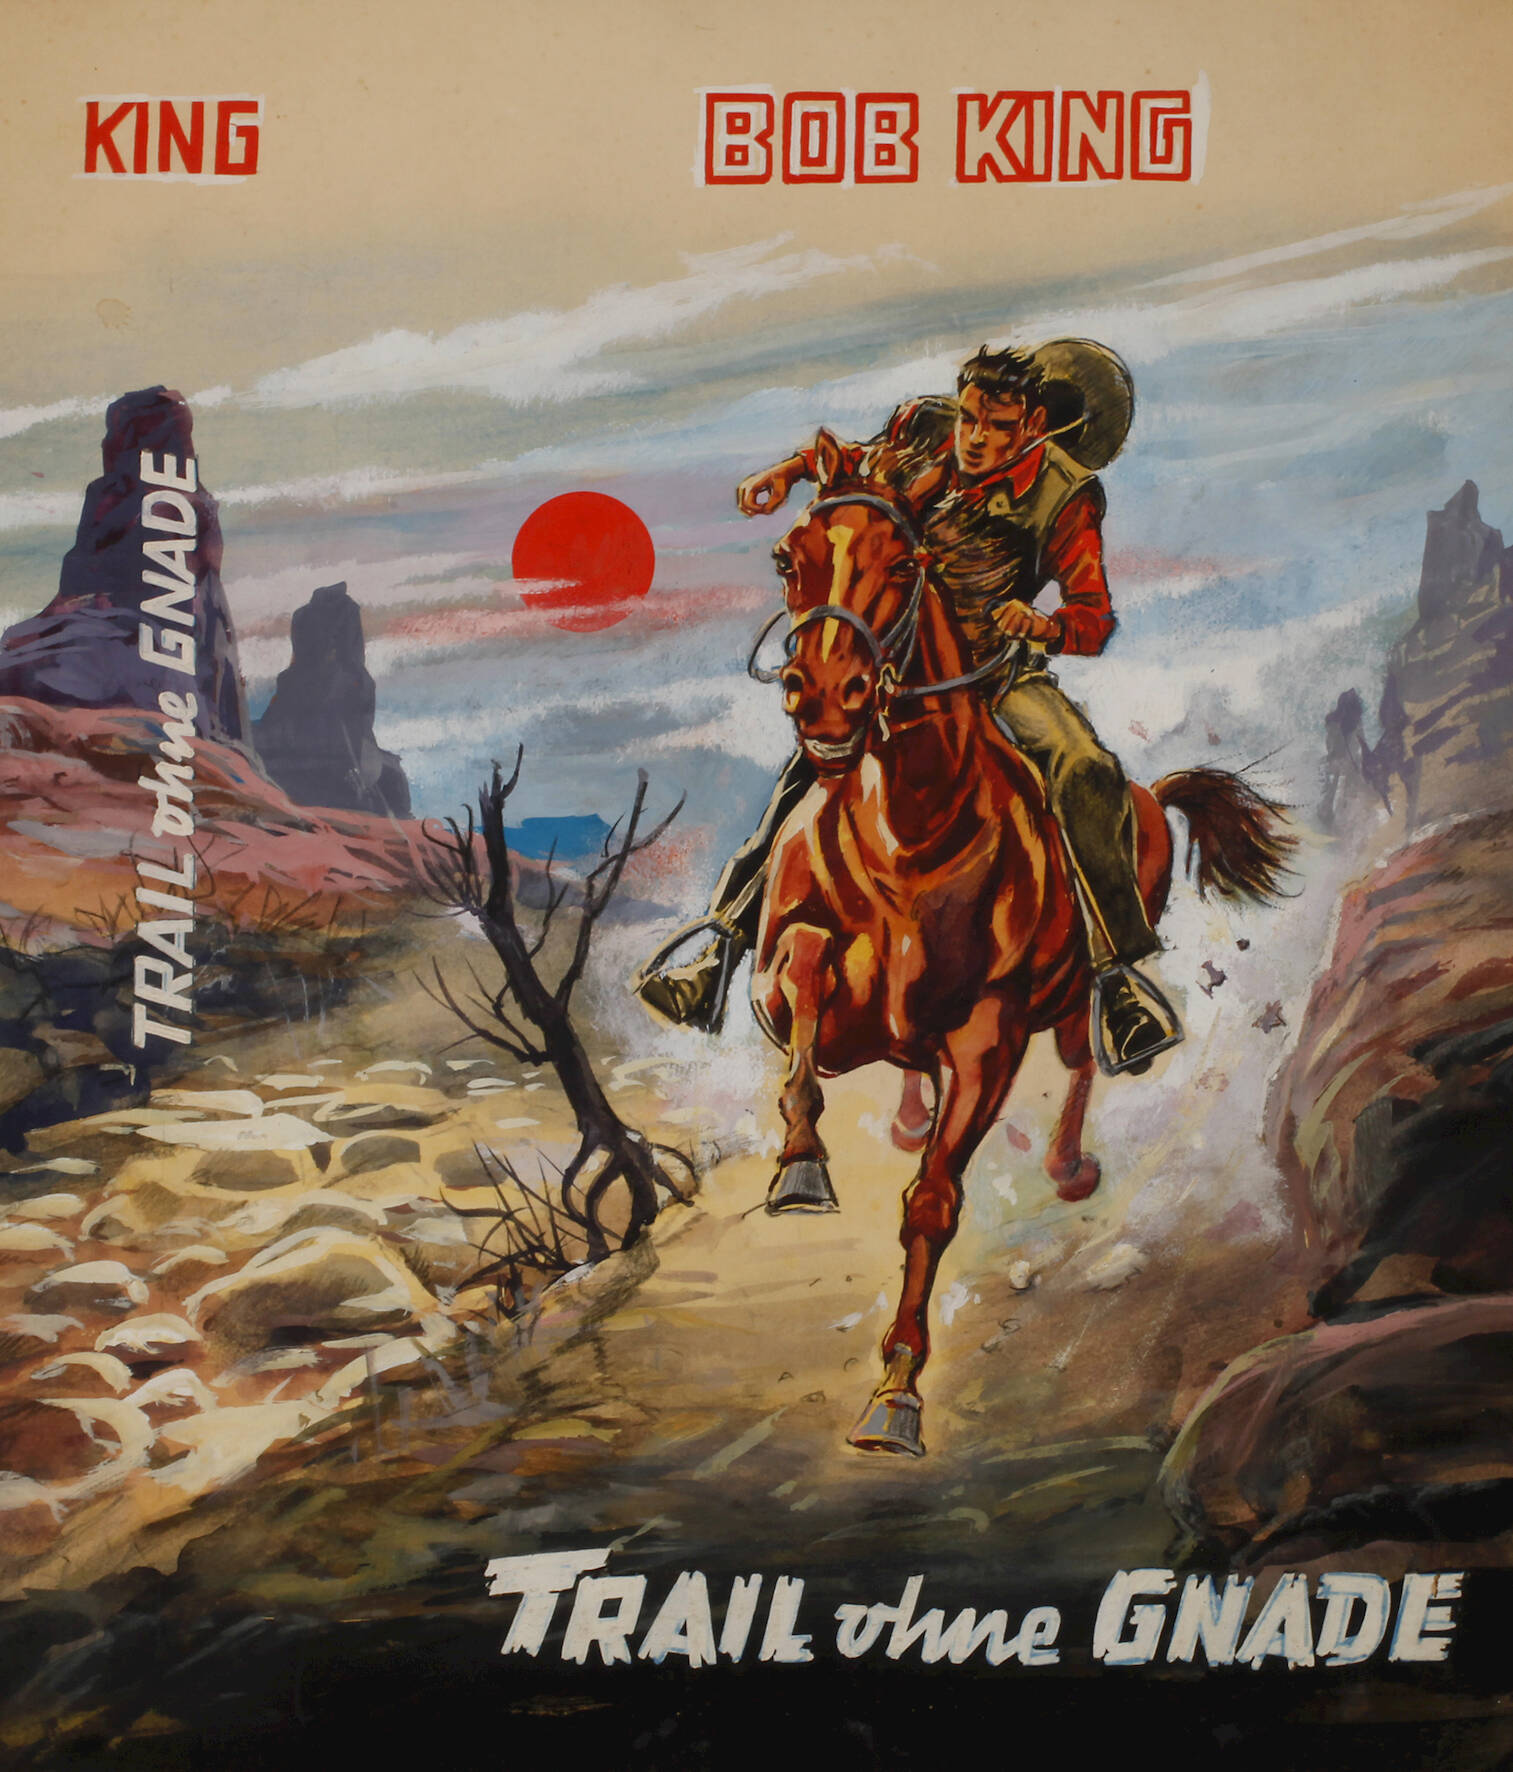 Umschlagentwurf für Bob King "Trail ohne Gnade"